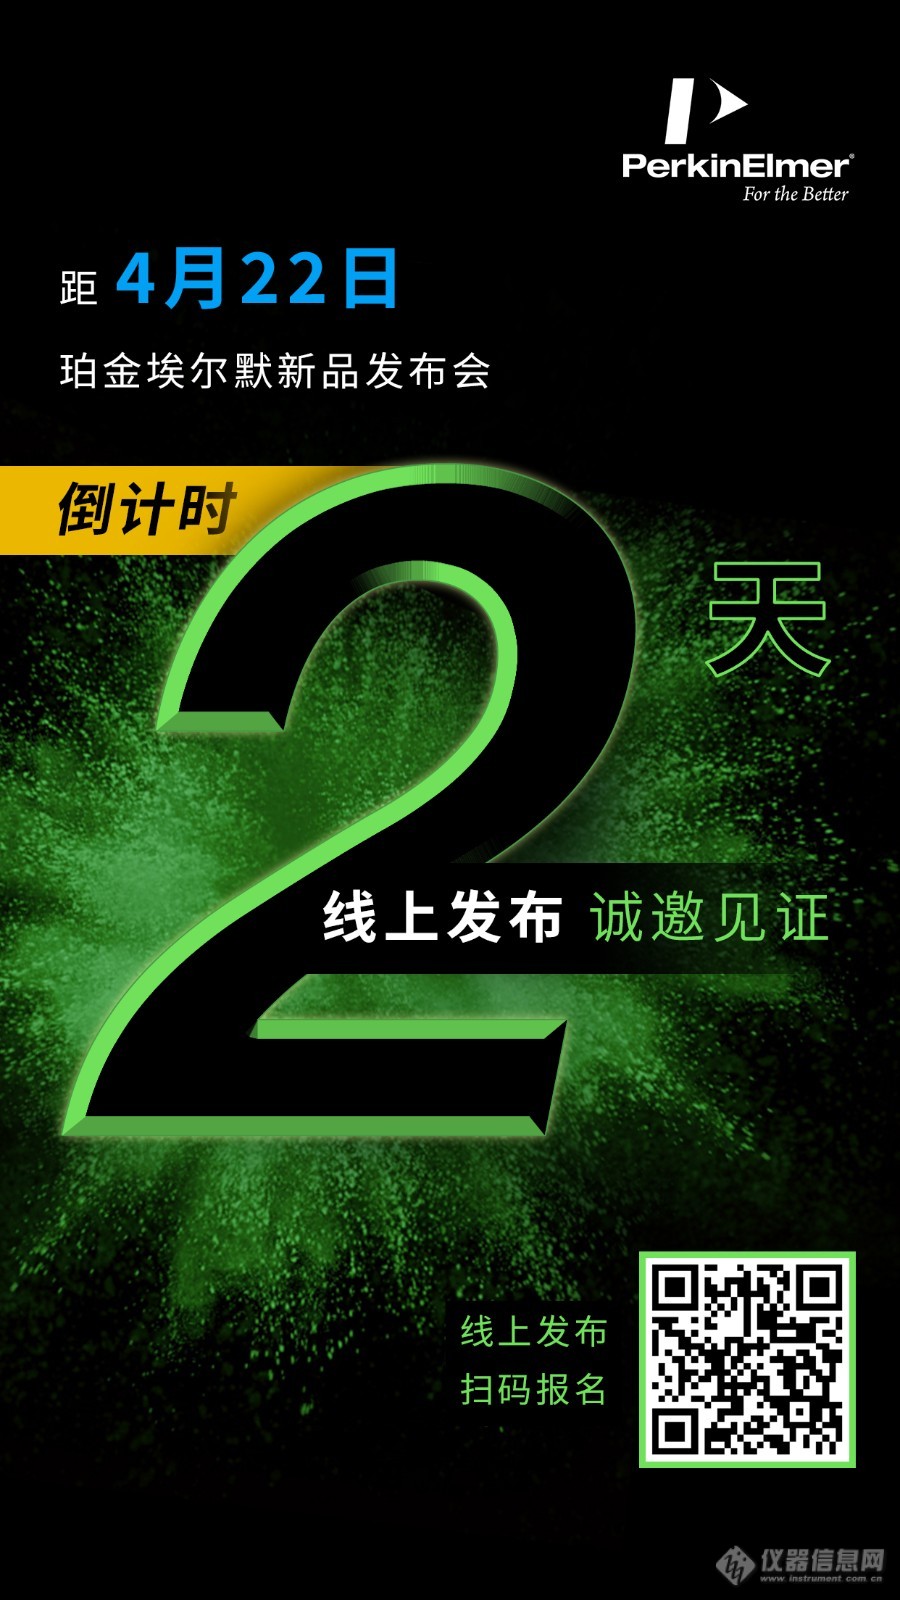 WeChat Image_20200420111442.jpg